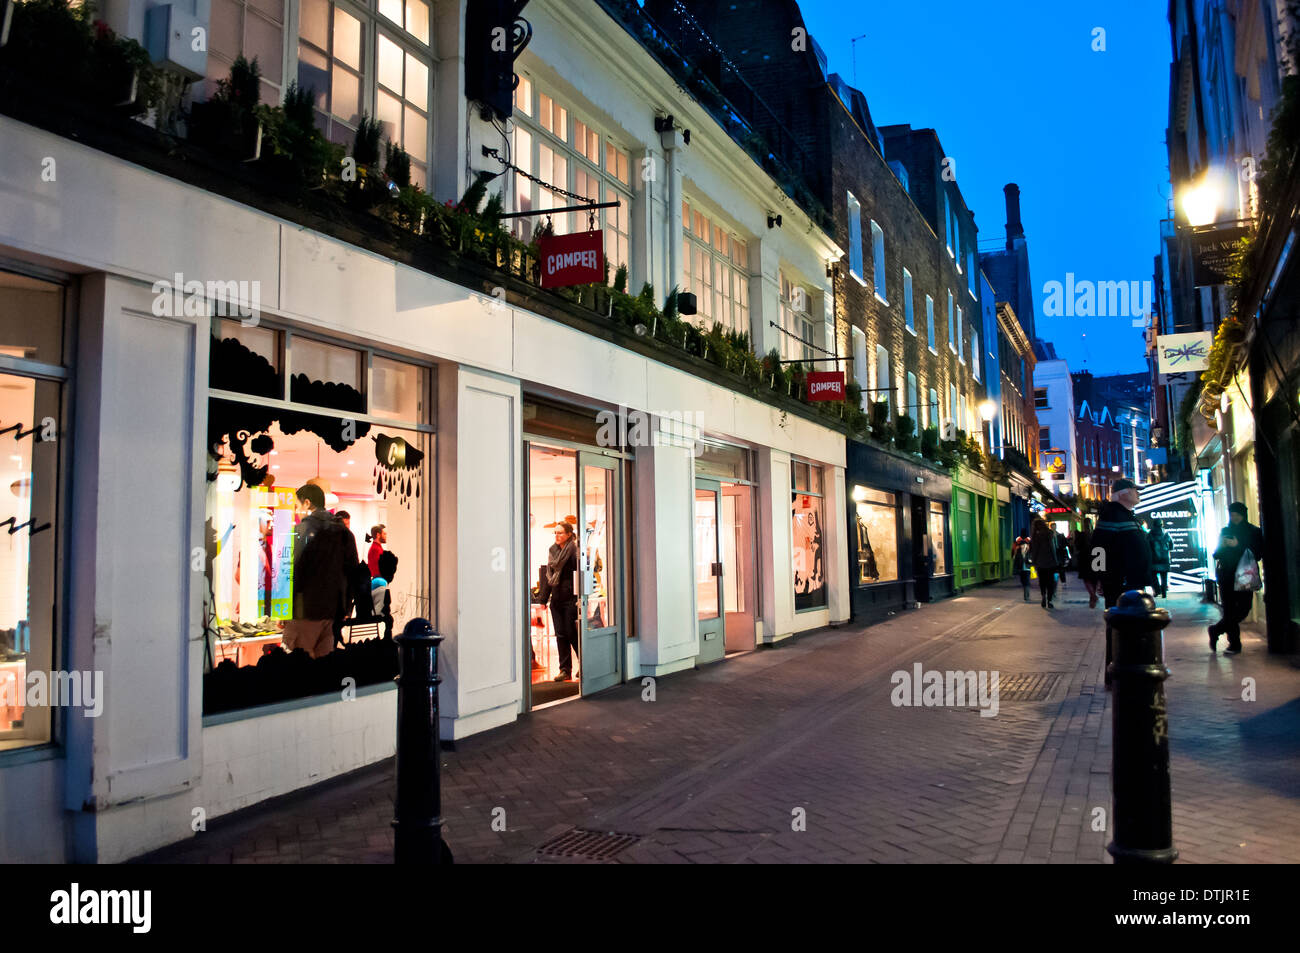 Des boutiques de la Place de Foubert off Carnaby Street, Soho, London, W1, UK Banque D'Images